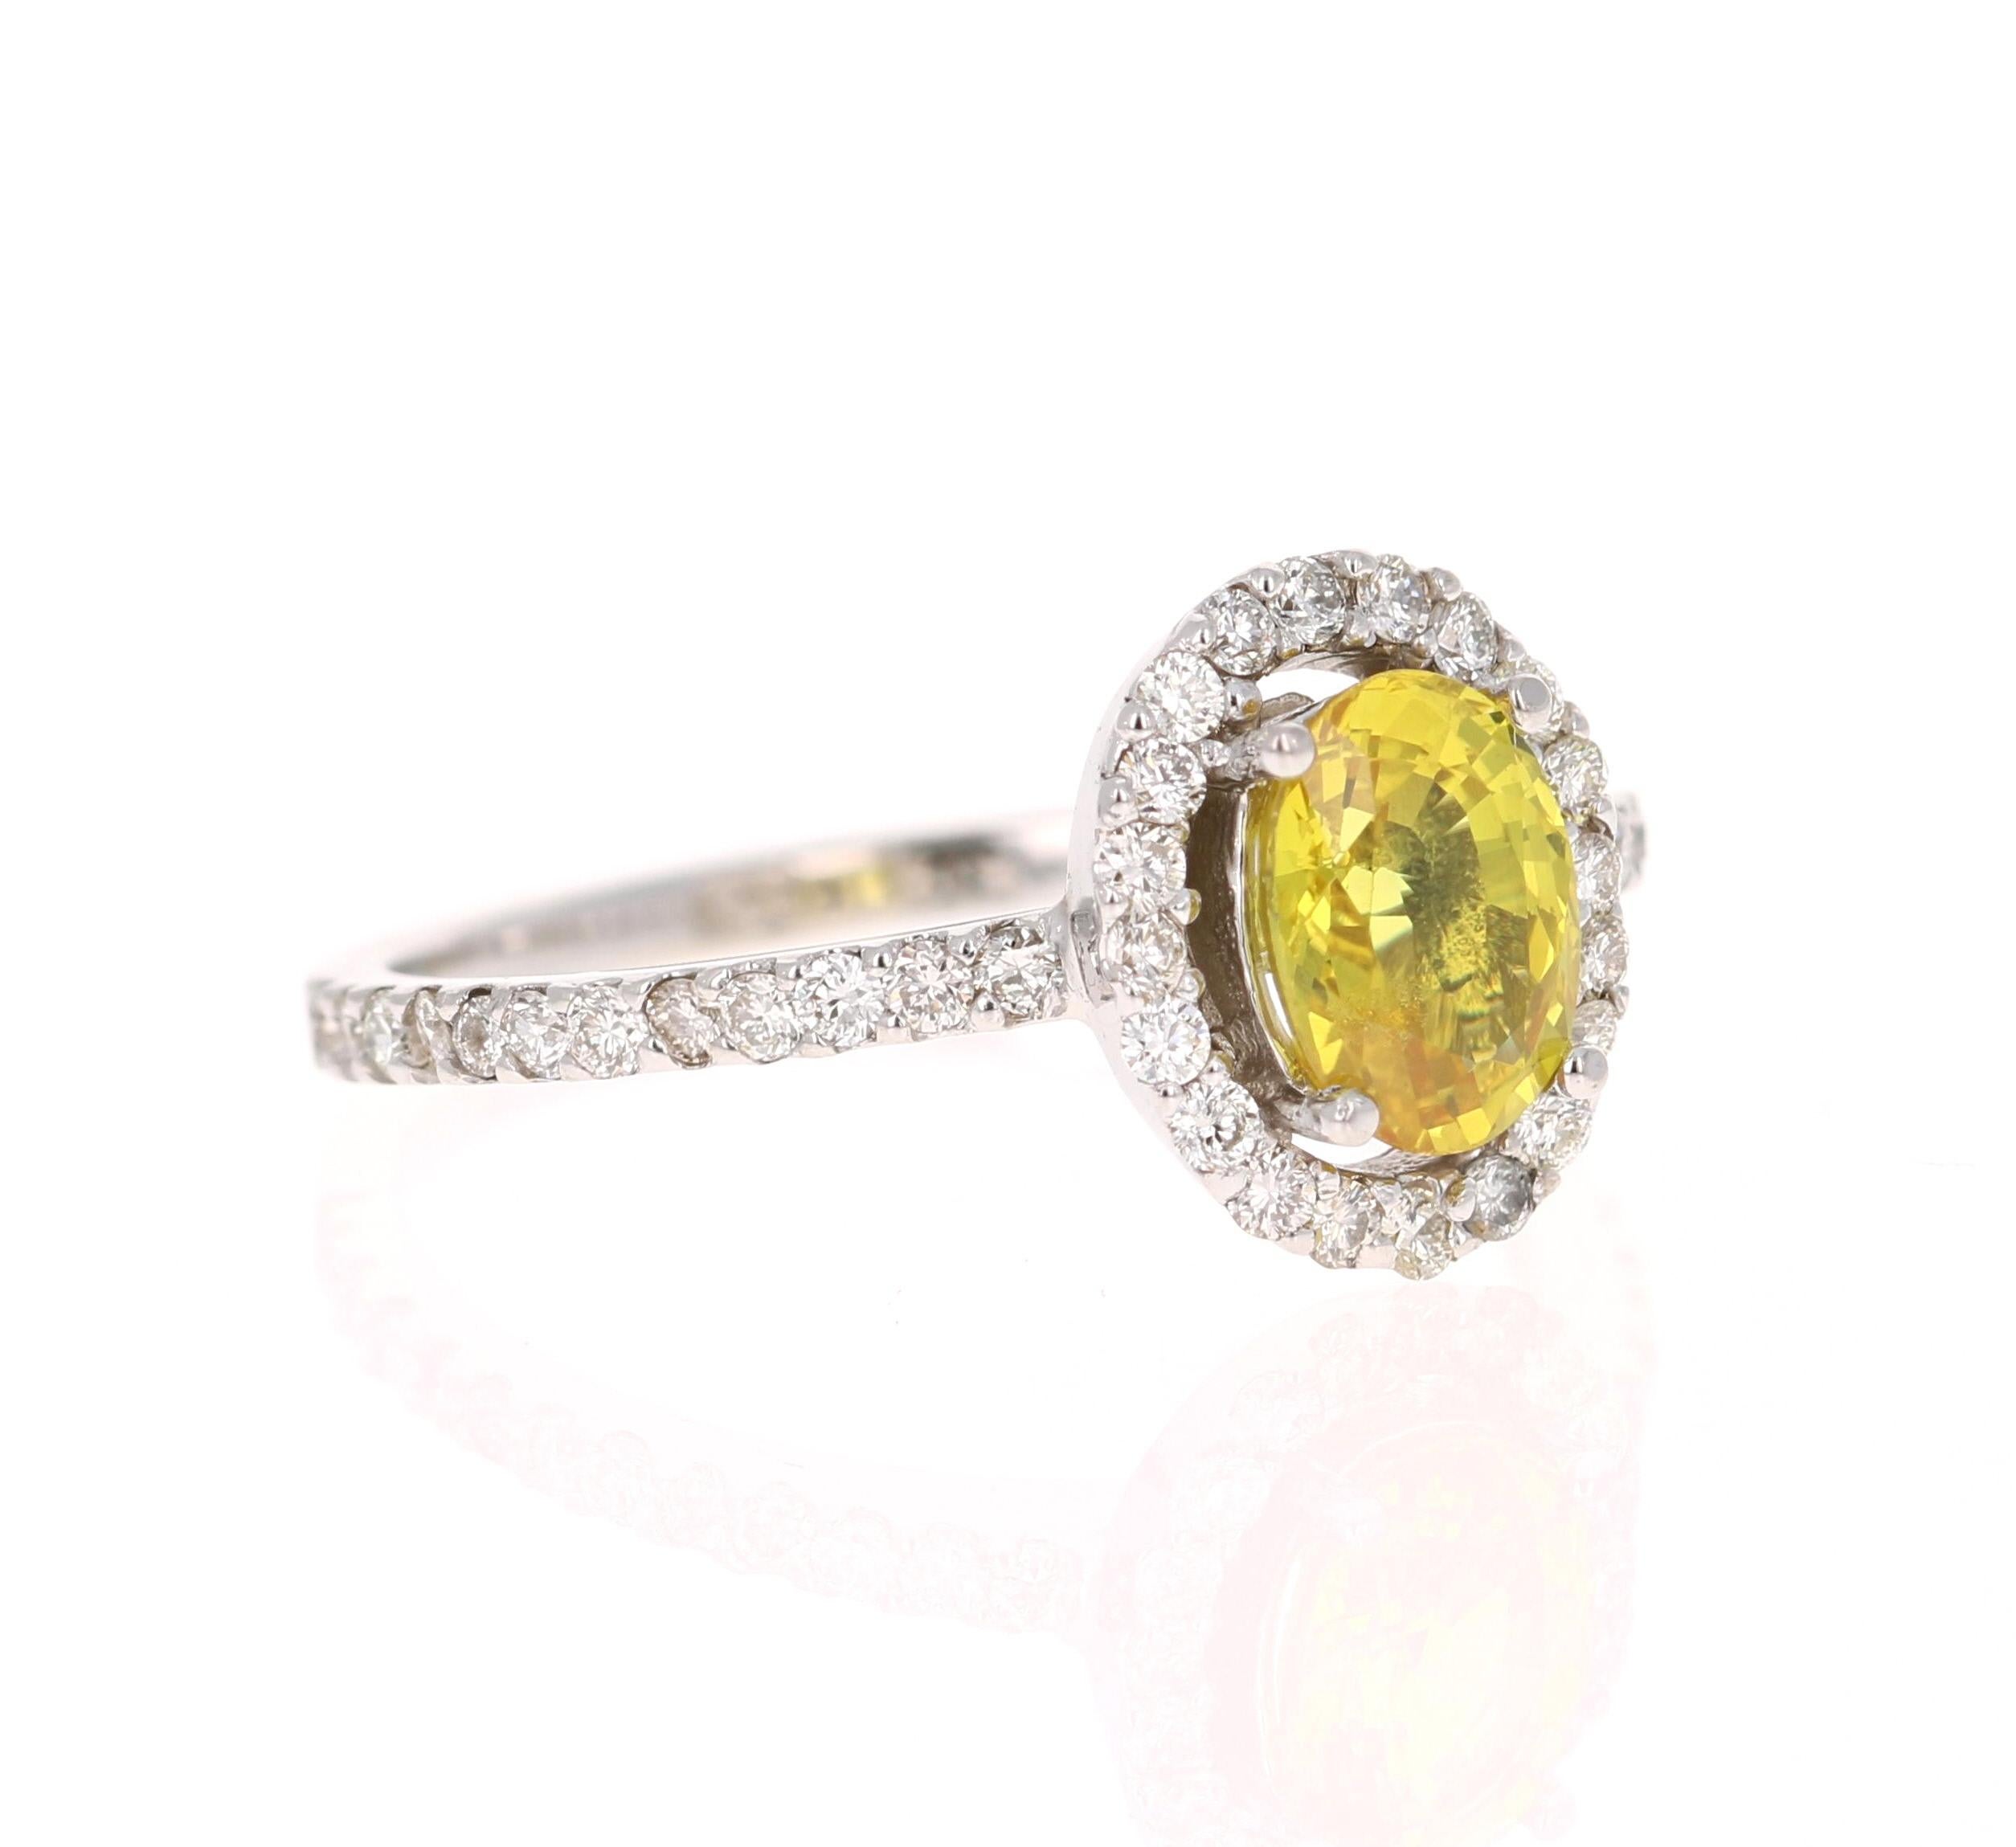 
Dieser wunderschöne Ring hat einen gelben Saphir im Ovalschliff, der 1,23 Karat wiegt. Er ist umgeben von 44 Diamanten im Rundschliff mit einem Gewicht von 0,48 Karat. (Reinheit: VS, Farbe: H)

Der Ring ist wunderschön in 14K Weißgold mit einem